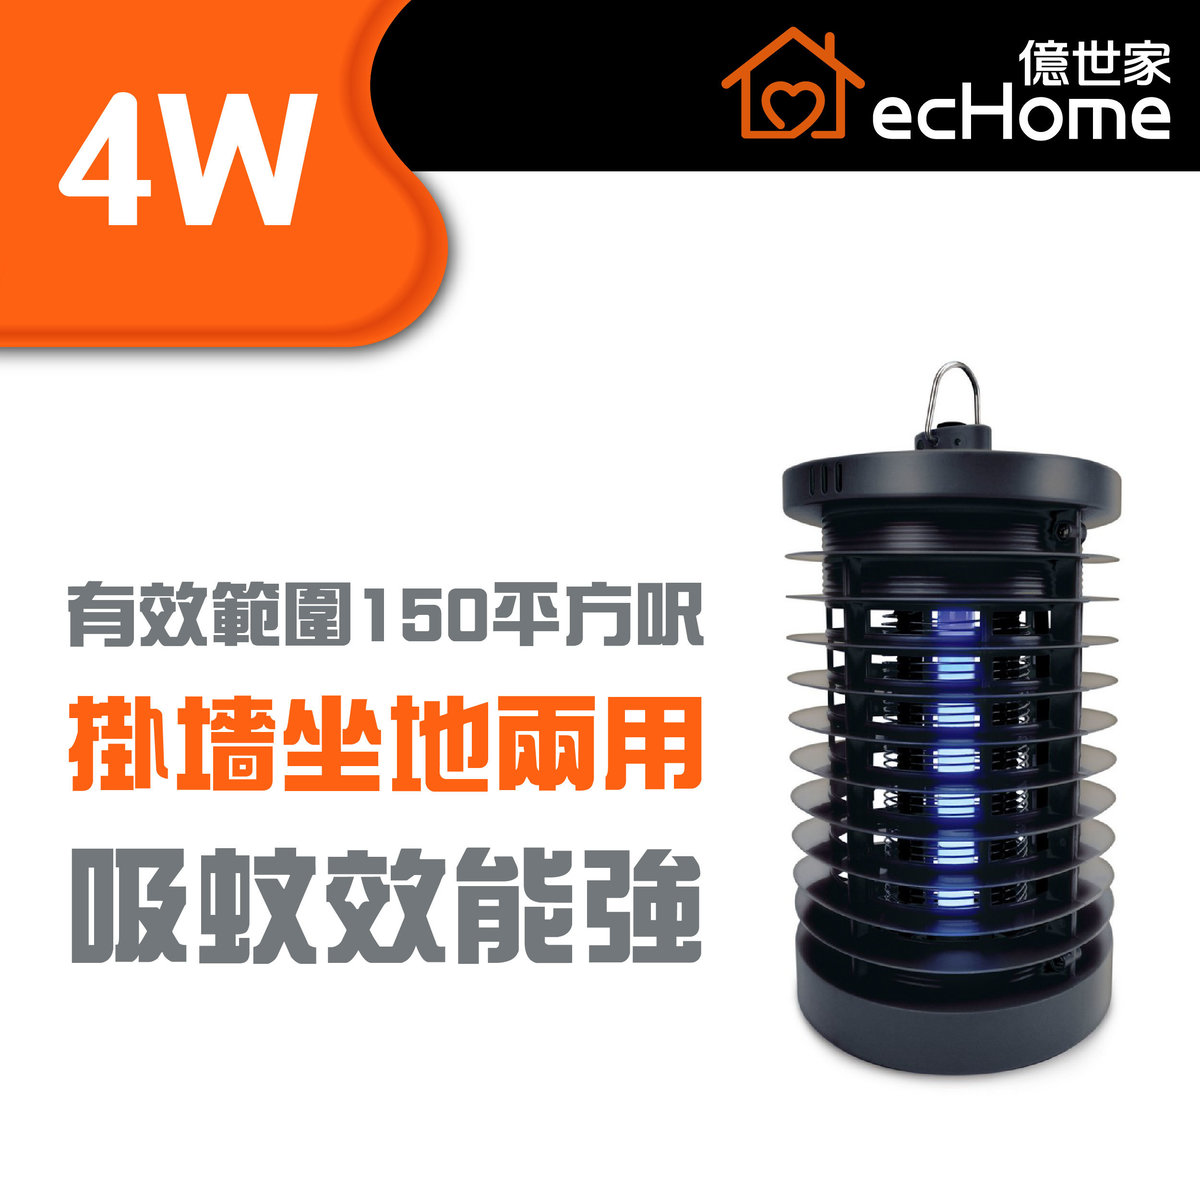 4W 強效滅蚊燈(黑色) - IK04BK | 蚊燈 | 電蚊燈 | 驅蚊燈 | 滅蚊器